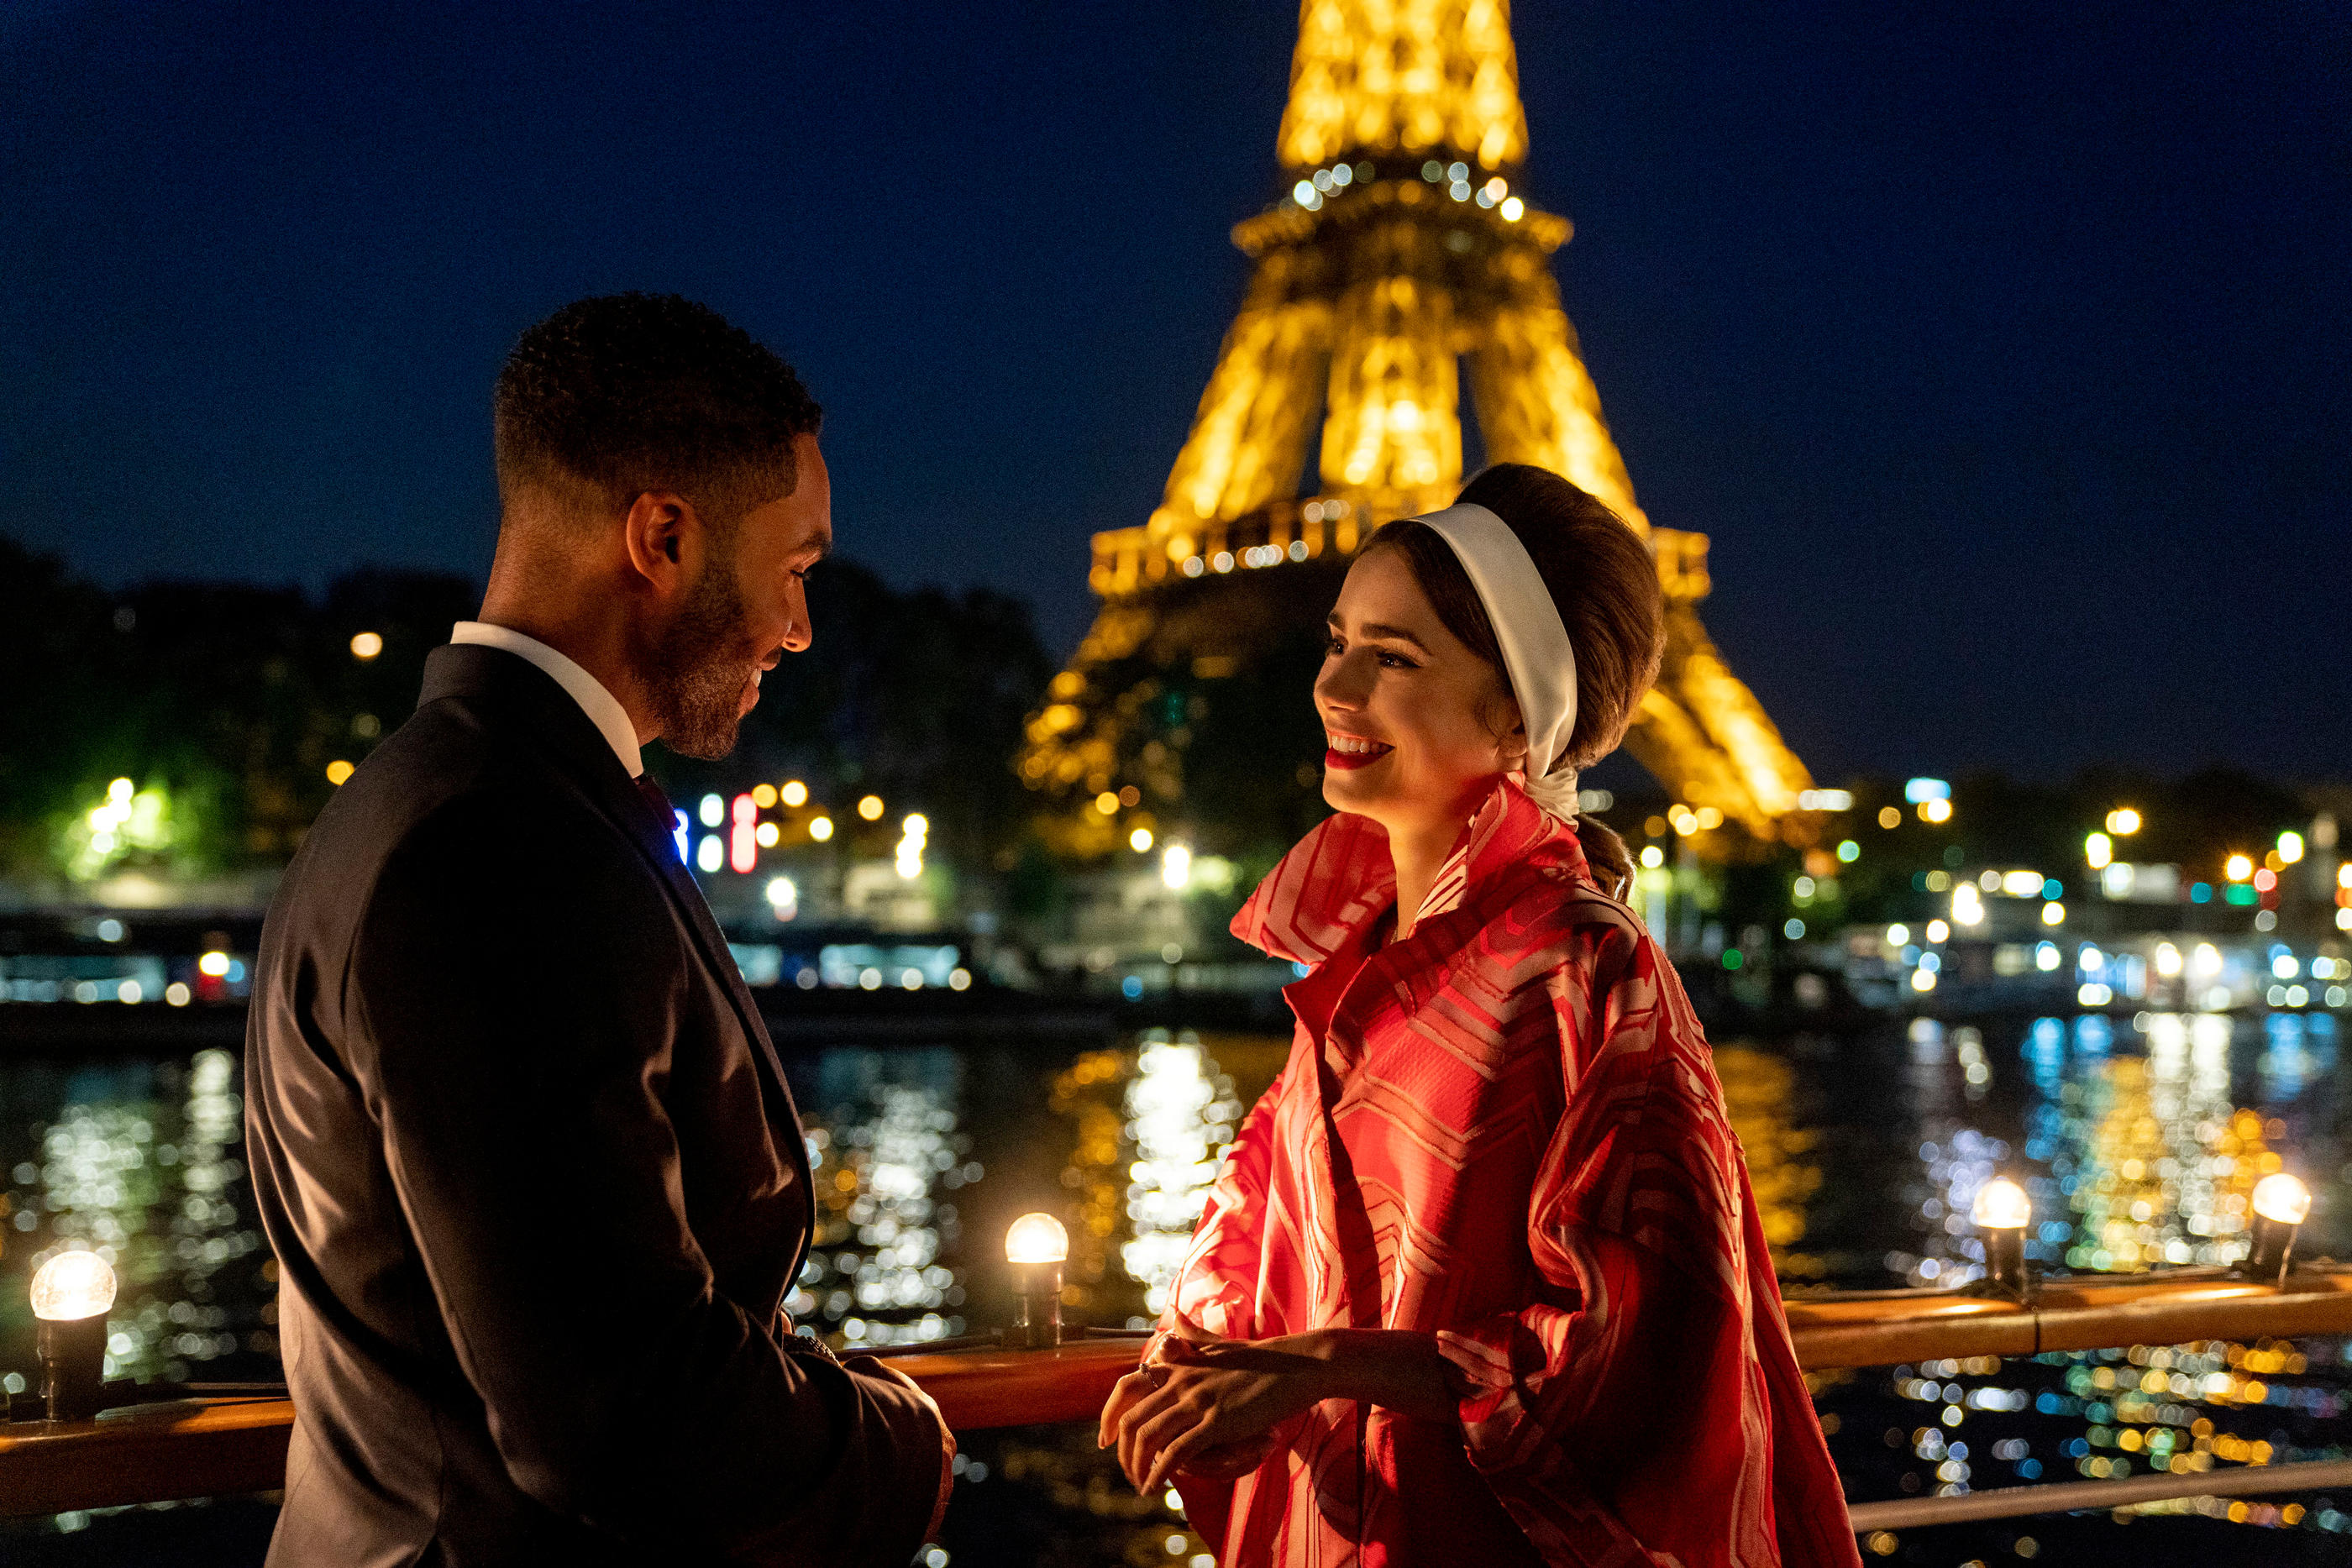 Emily in Paris» sur Netflix : une saison 2 ratée avec encore plus de  clichés - Le Parisien